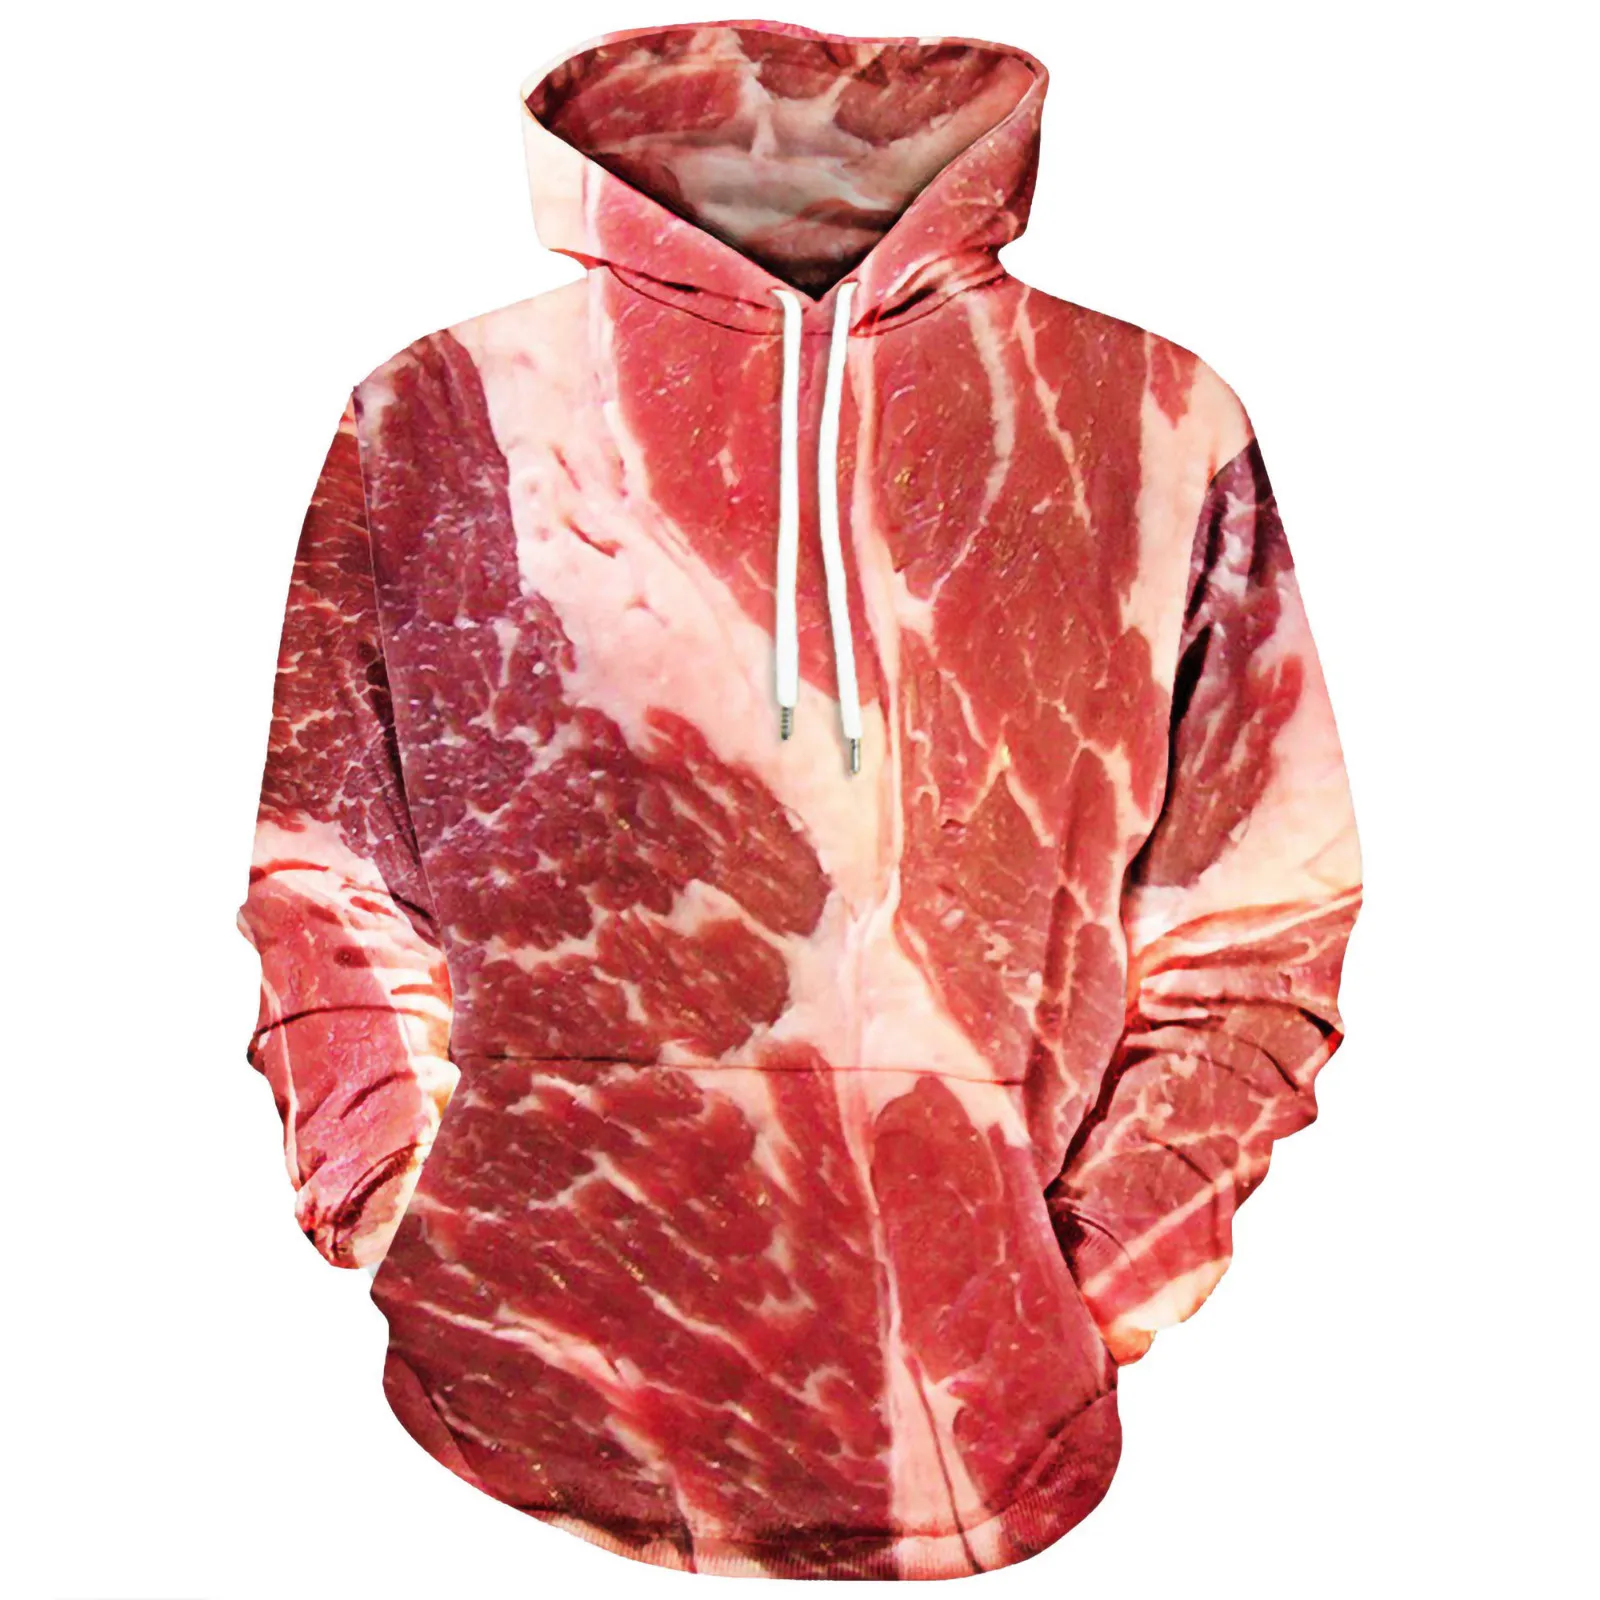 3d Meat Printed Hoodies Men Long Sleeve Drawstring Hooded Sweatshirt Pullover Tops Sudaderas Hombre  Sweatshirt Men